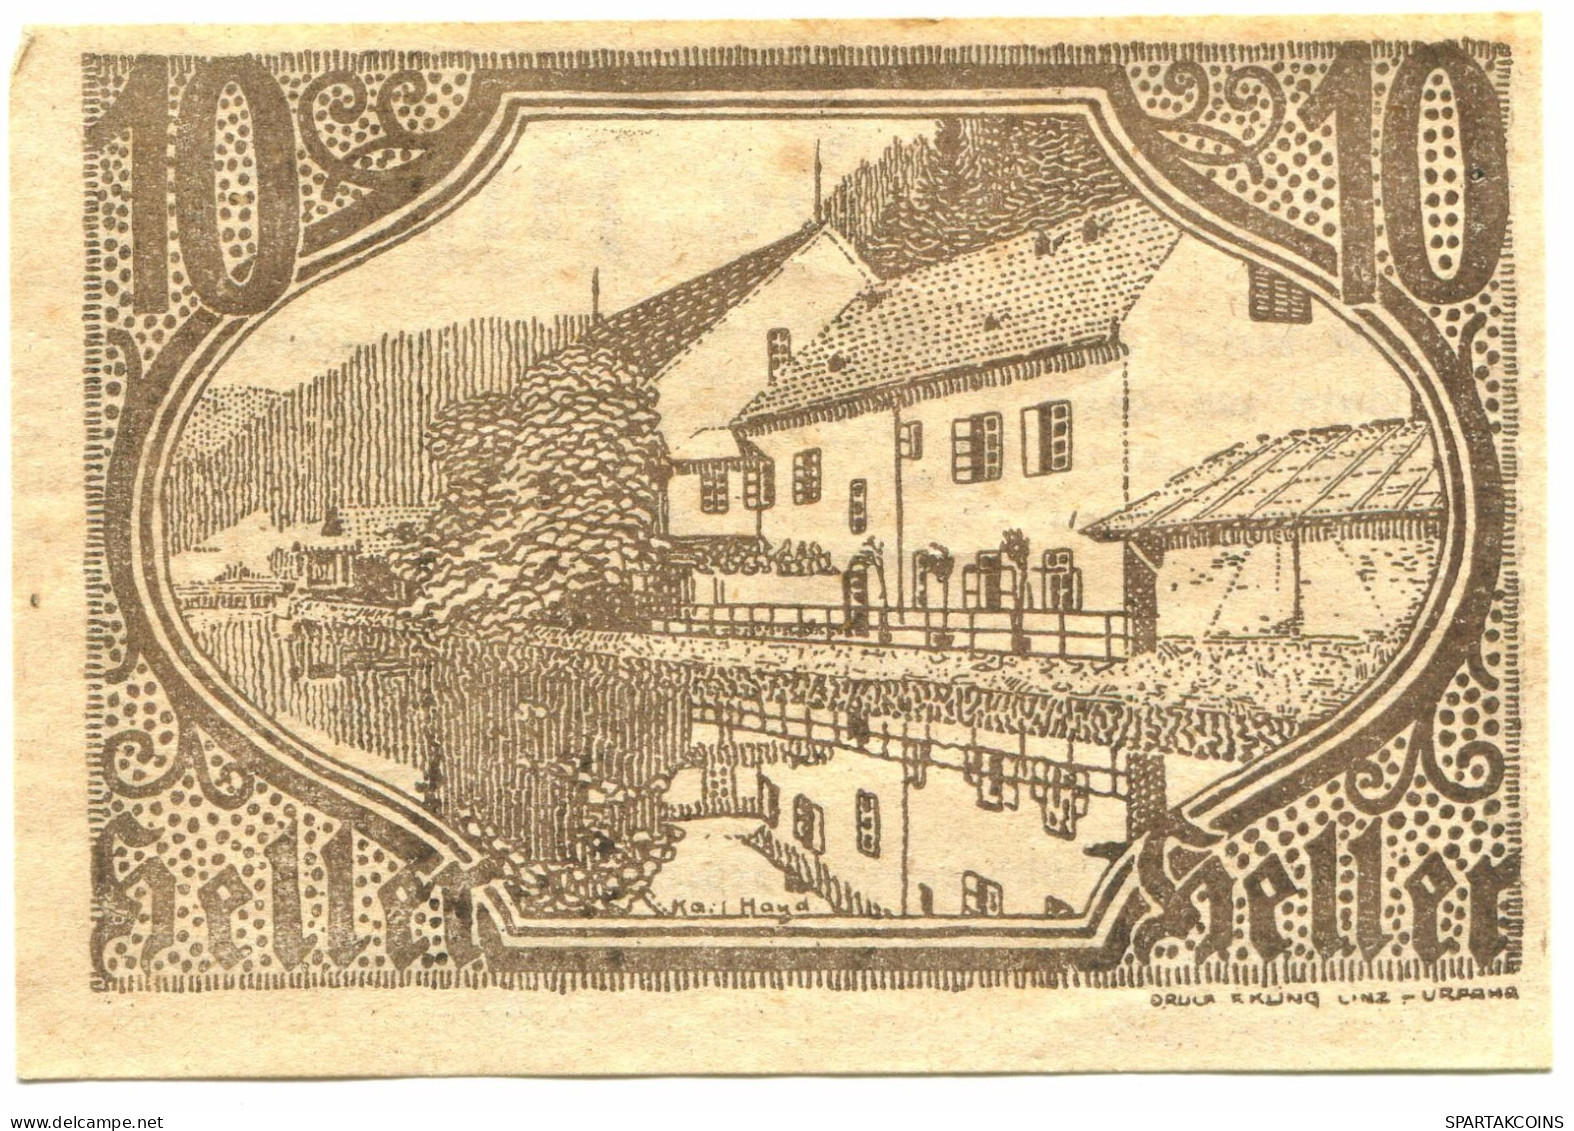 10 HELLER 1920 Altaist Österreich UNC Notgeld Papiergeld Banknote #P10243 - [11] Local Banknote Issues